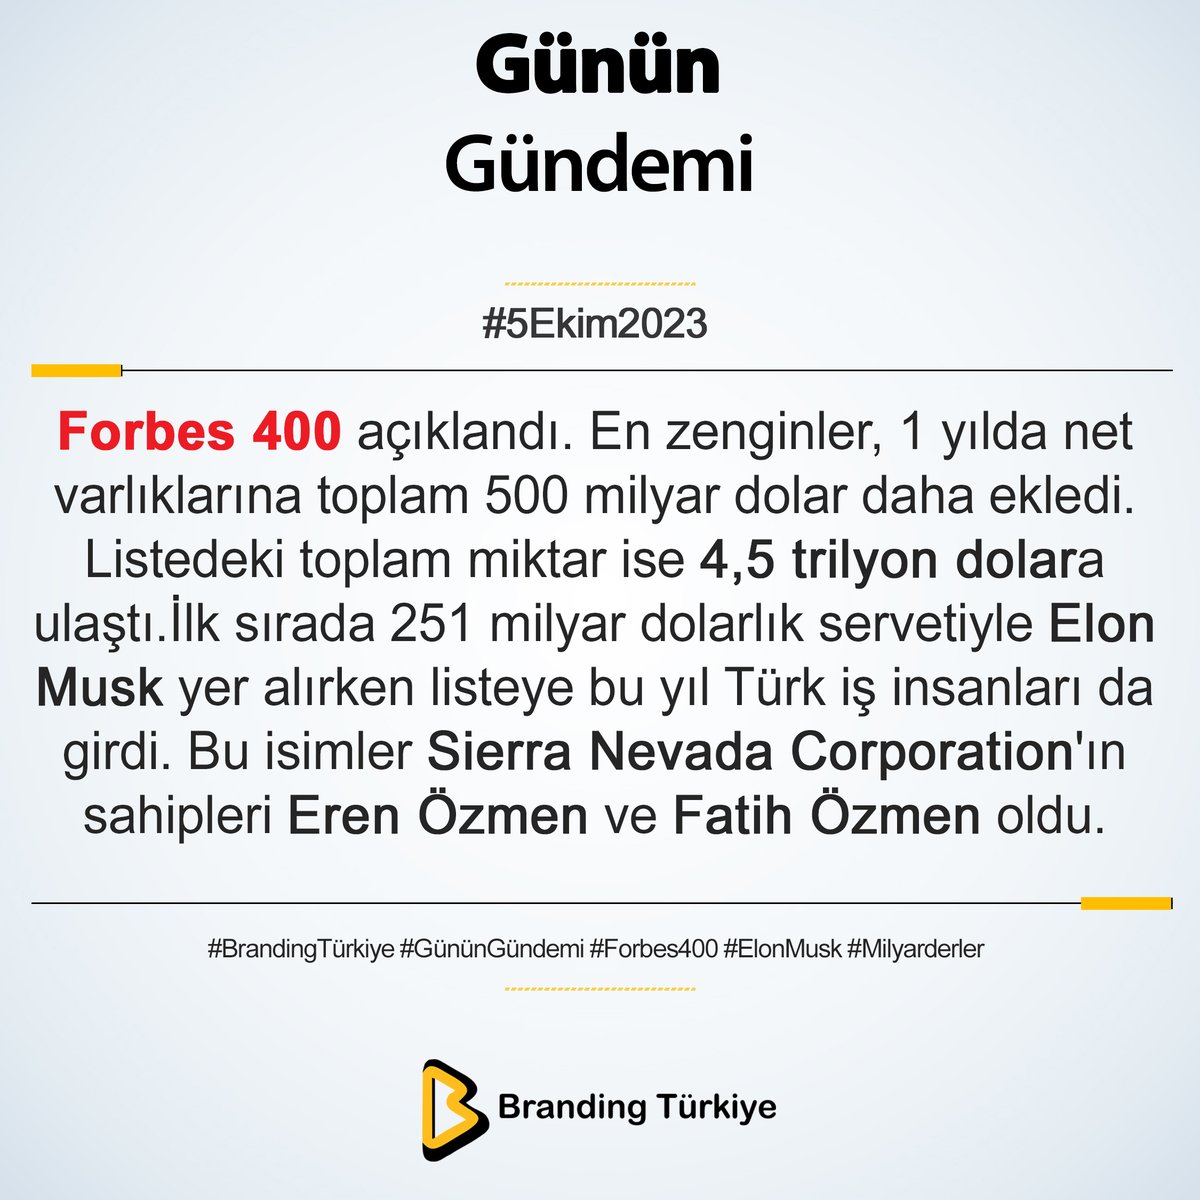 #5Ekim2023

Forbes 400 açıklandı. En zenginler, 1 yılda net varlıklarına toplam 500 milyar dolar daha ekledi. 

▶ brandingturkiye.com
#BrandingTürkiye #GününGündemi #Haberler #Forbes400 #Ekonomi #İşDünyası #ElonMusk #Milyarderler #SONDAKİKA #DolarTL